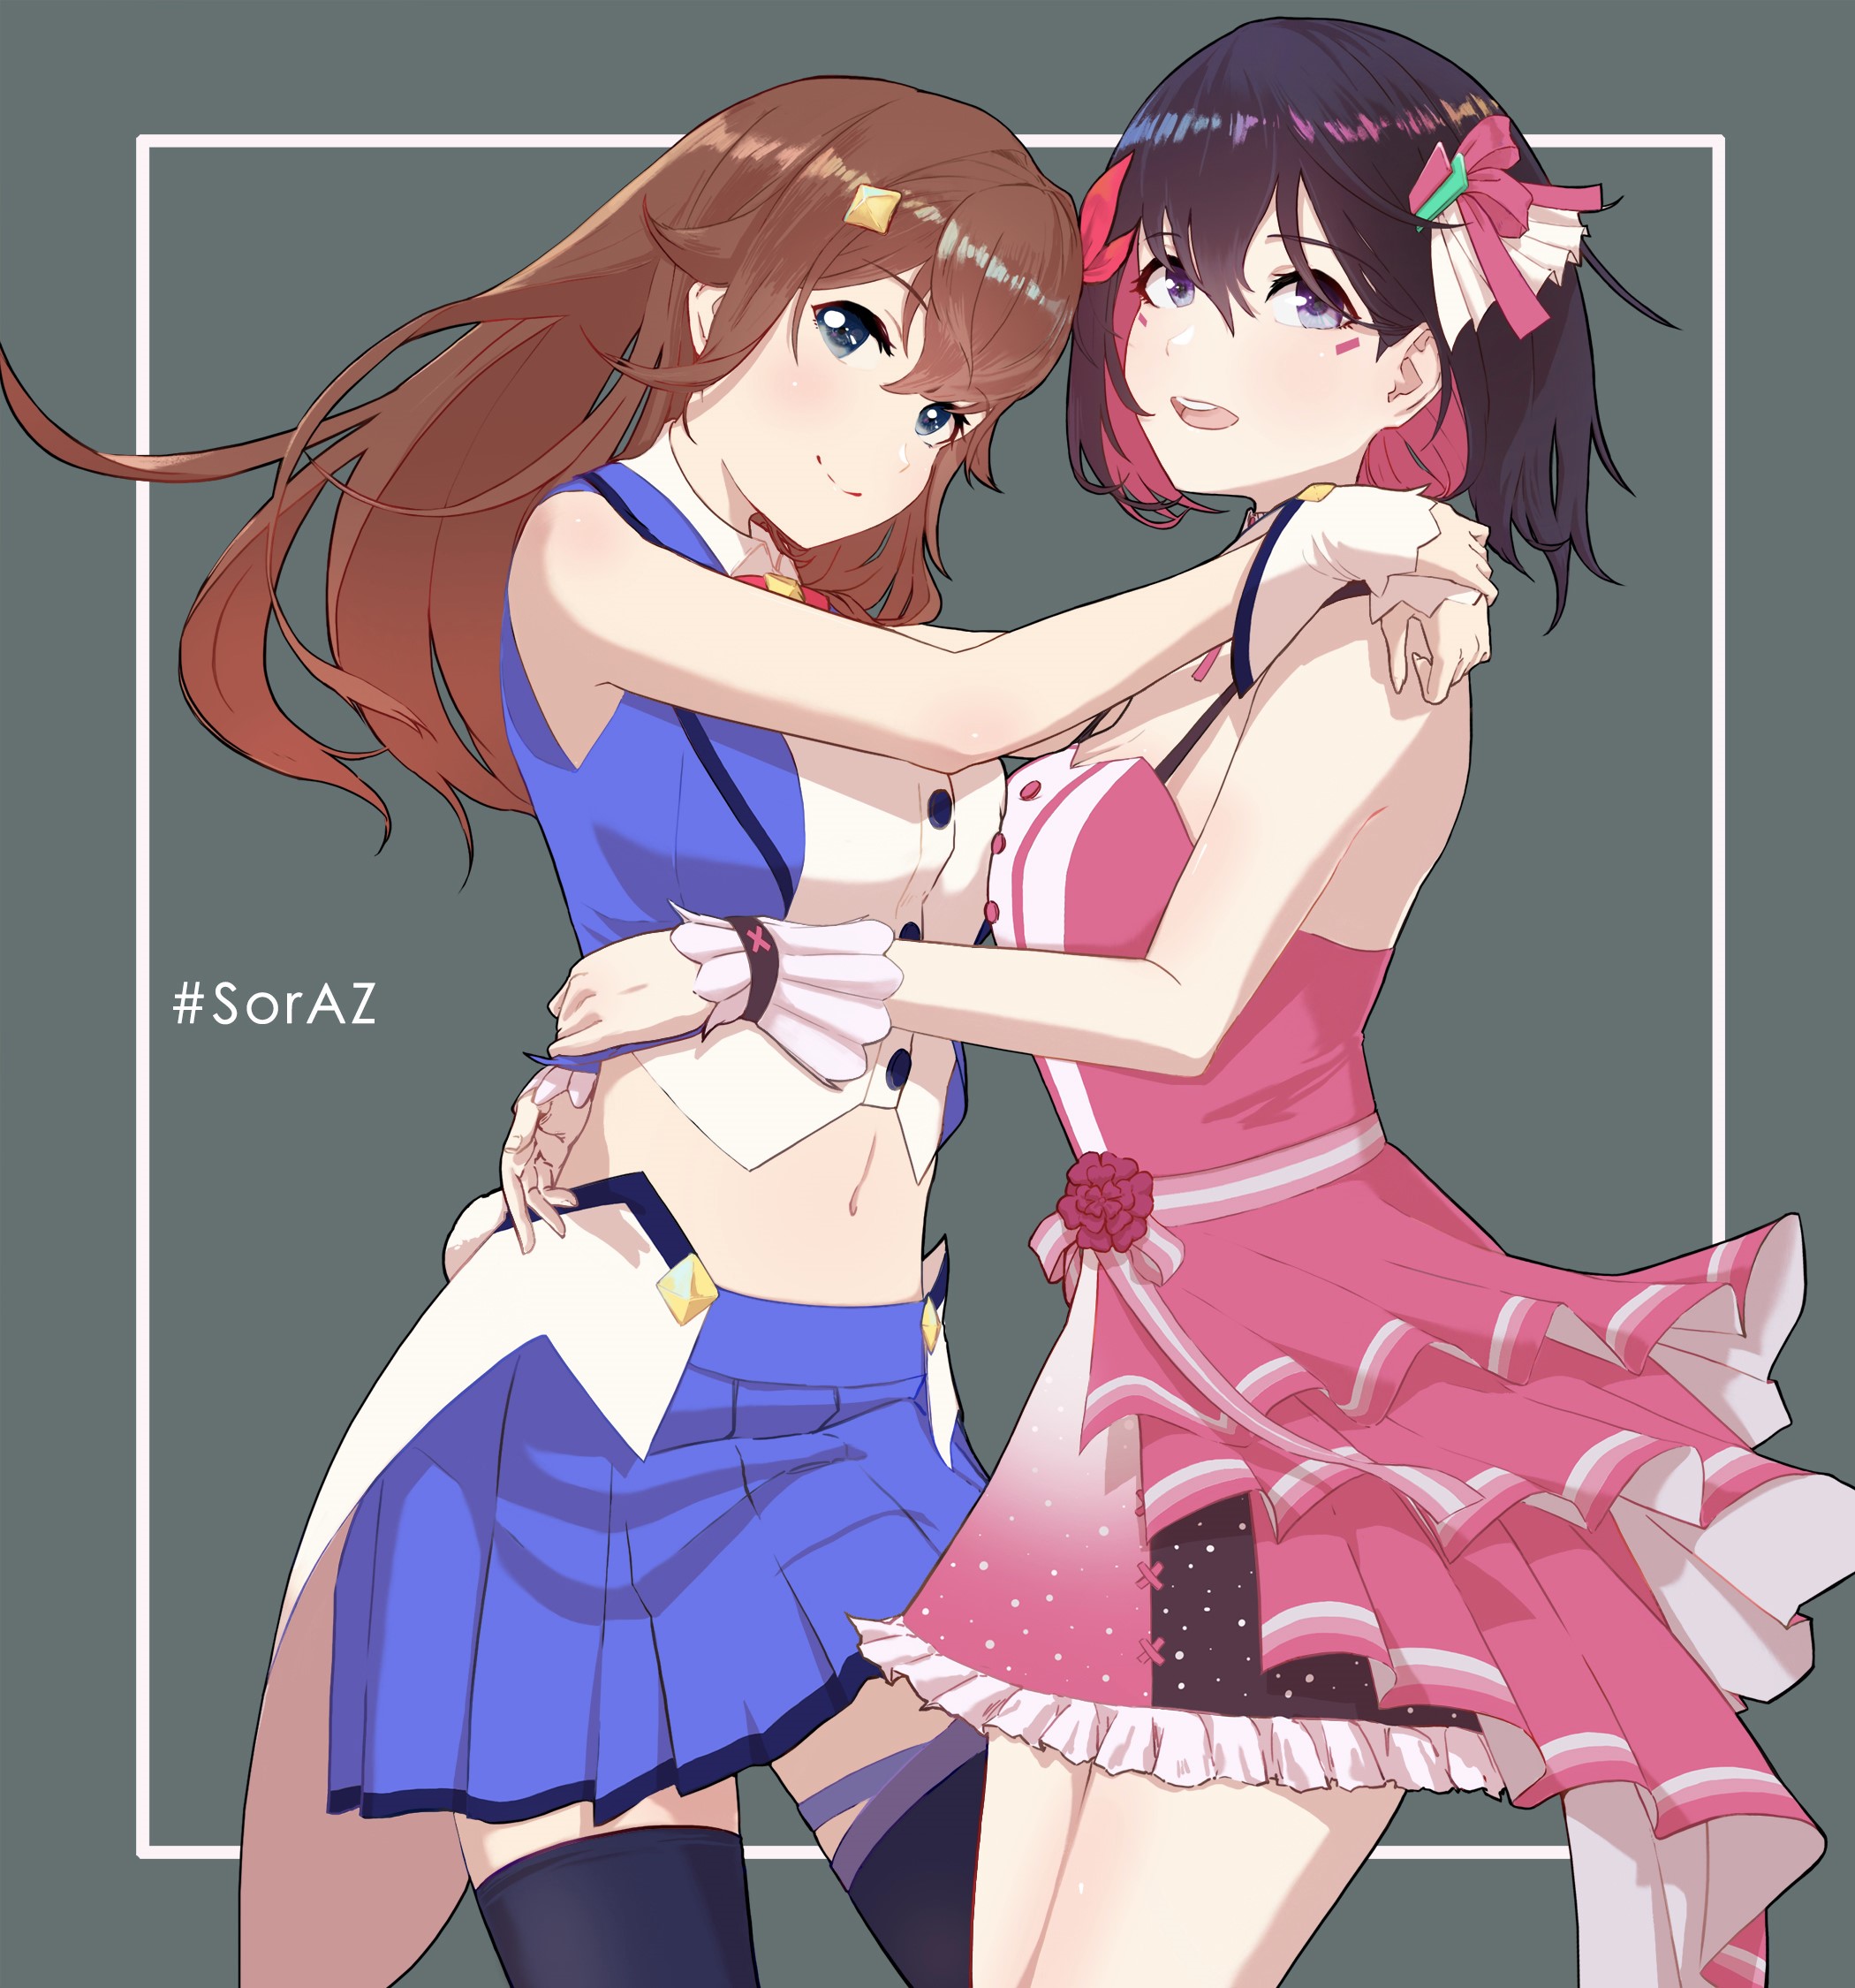 Anime Anime Girls Virtual Youtuber Hololive AZKi Tokino Sora Artwork Digital Art Fan Art Brunette Bl 2100x2250